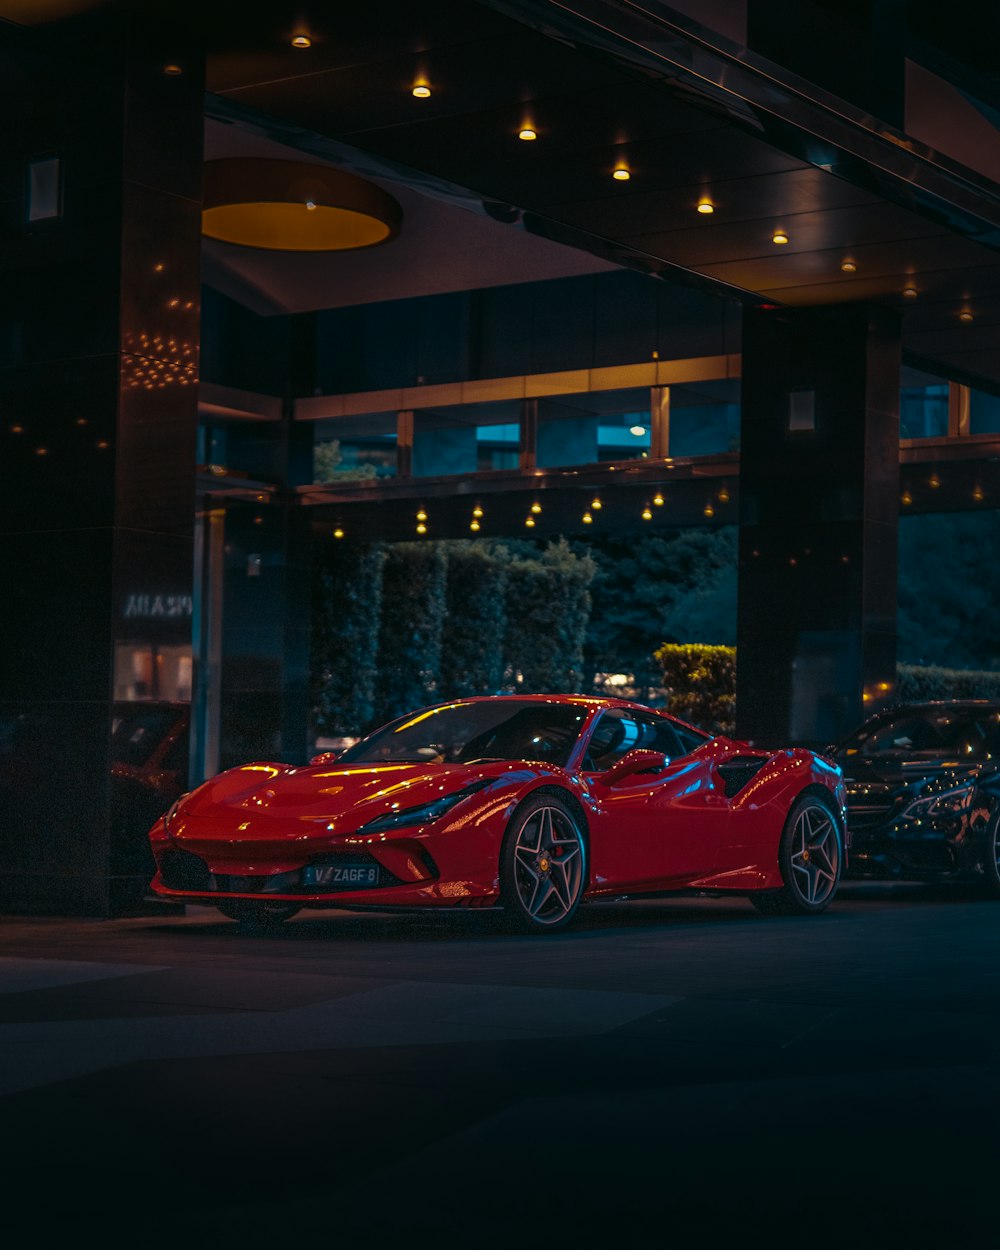 Roter Ferrari 458 Italia parkt in der Nähe des Gebäudes